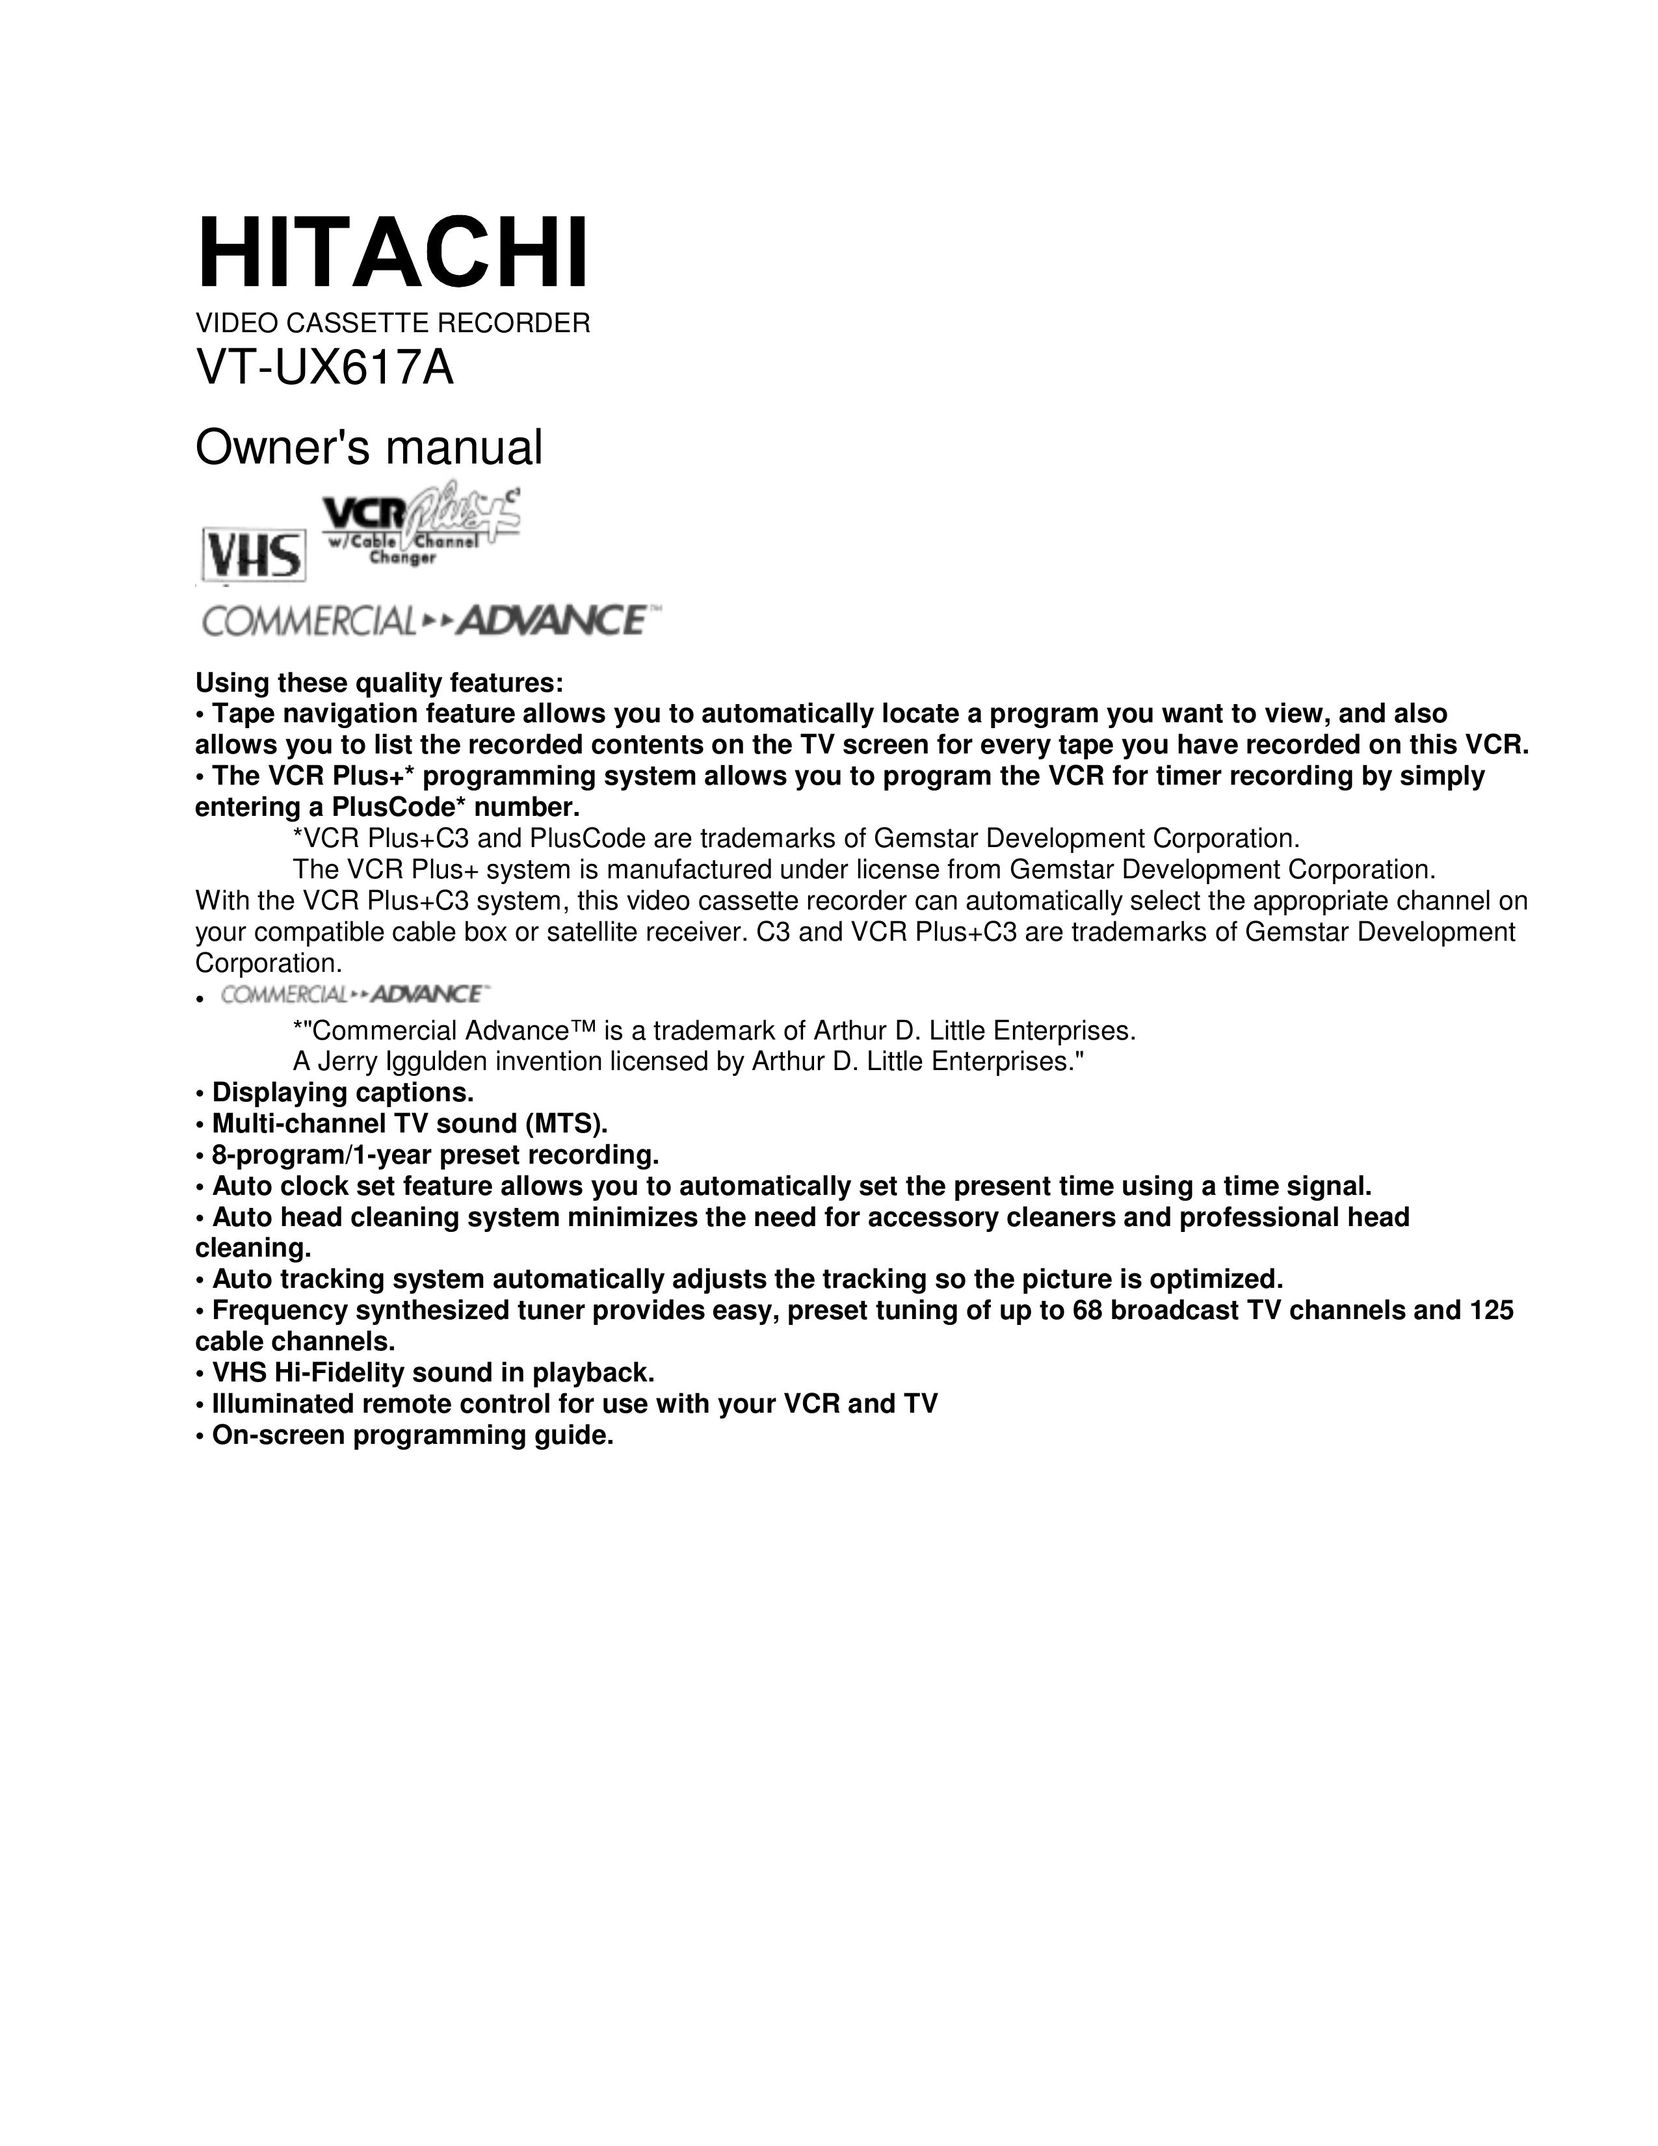 Hitachi VT-UX617A VCR User Manual